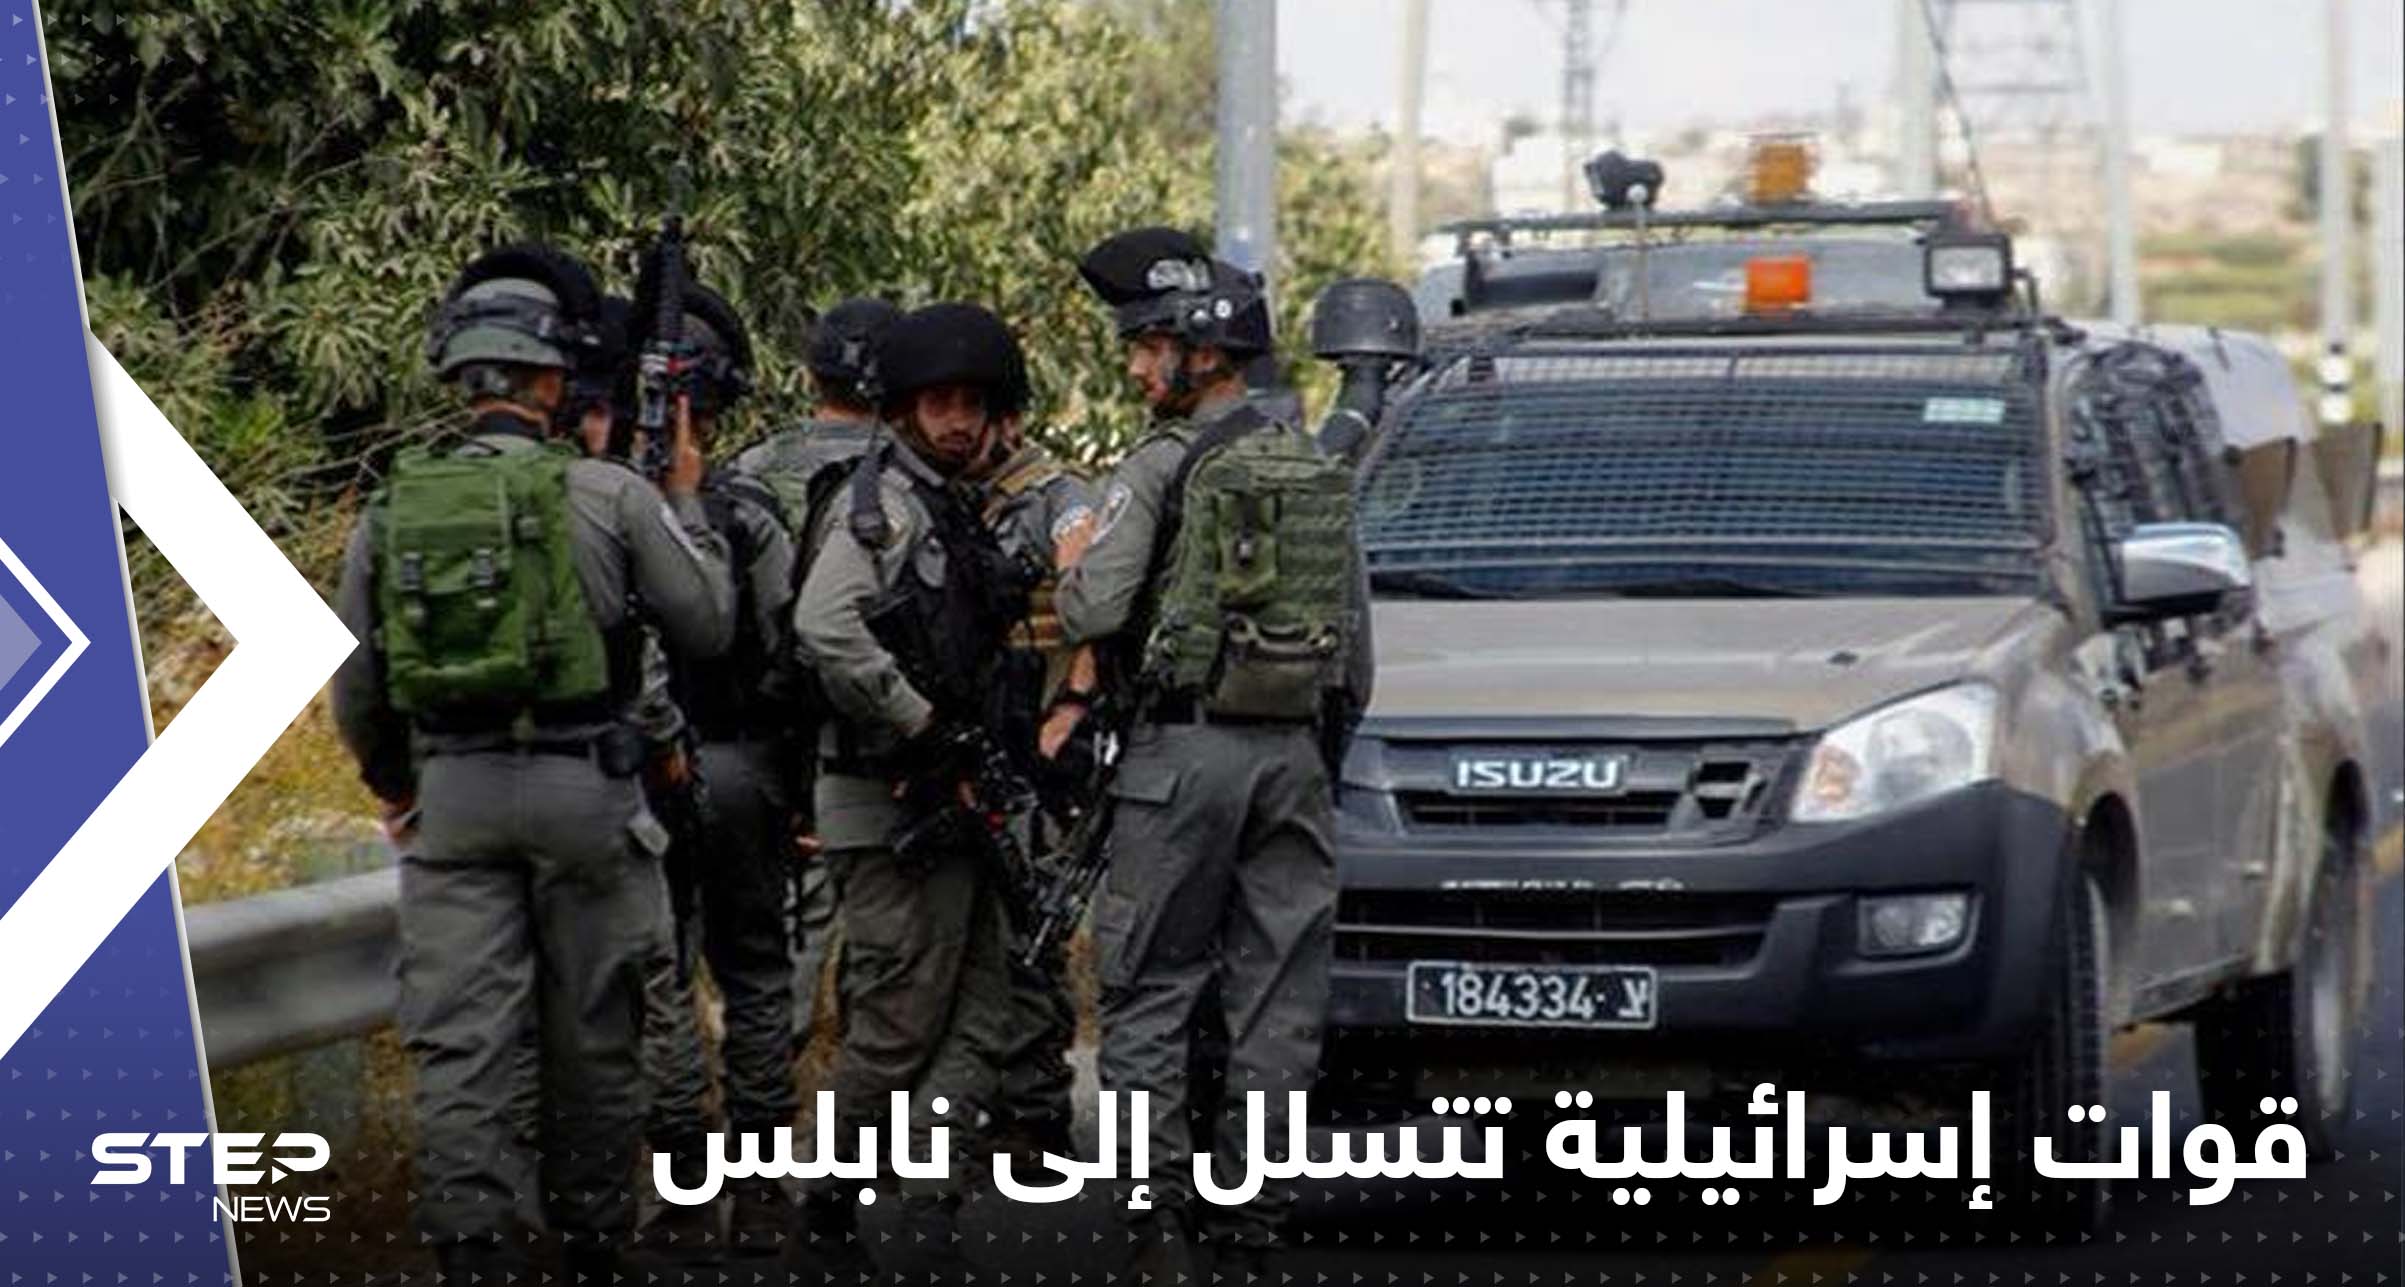 شاهد|| "تسللوا عبر شاحنة".. قوات إسرائيلية تقتحم مدينة نابلس وقتلى وجرحى خلال الاشتباكات